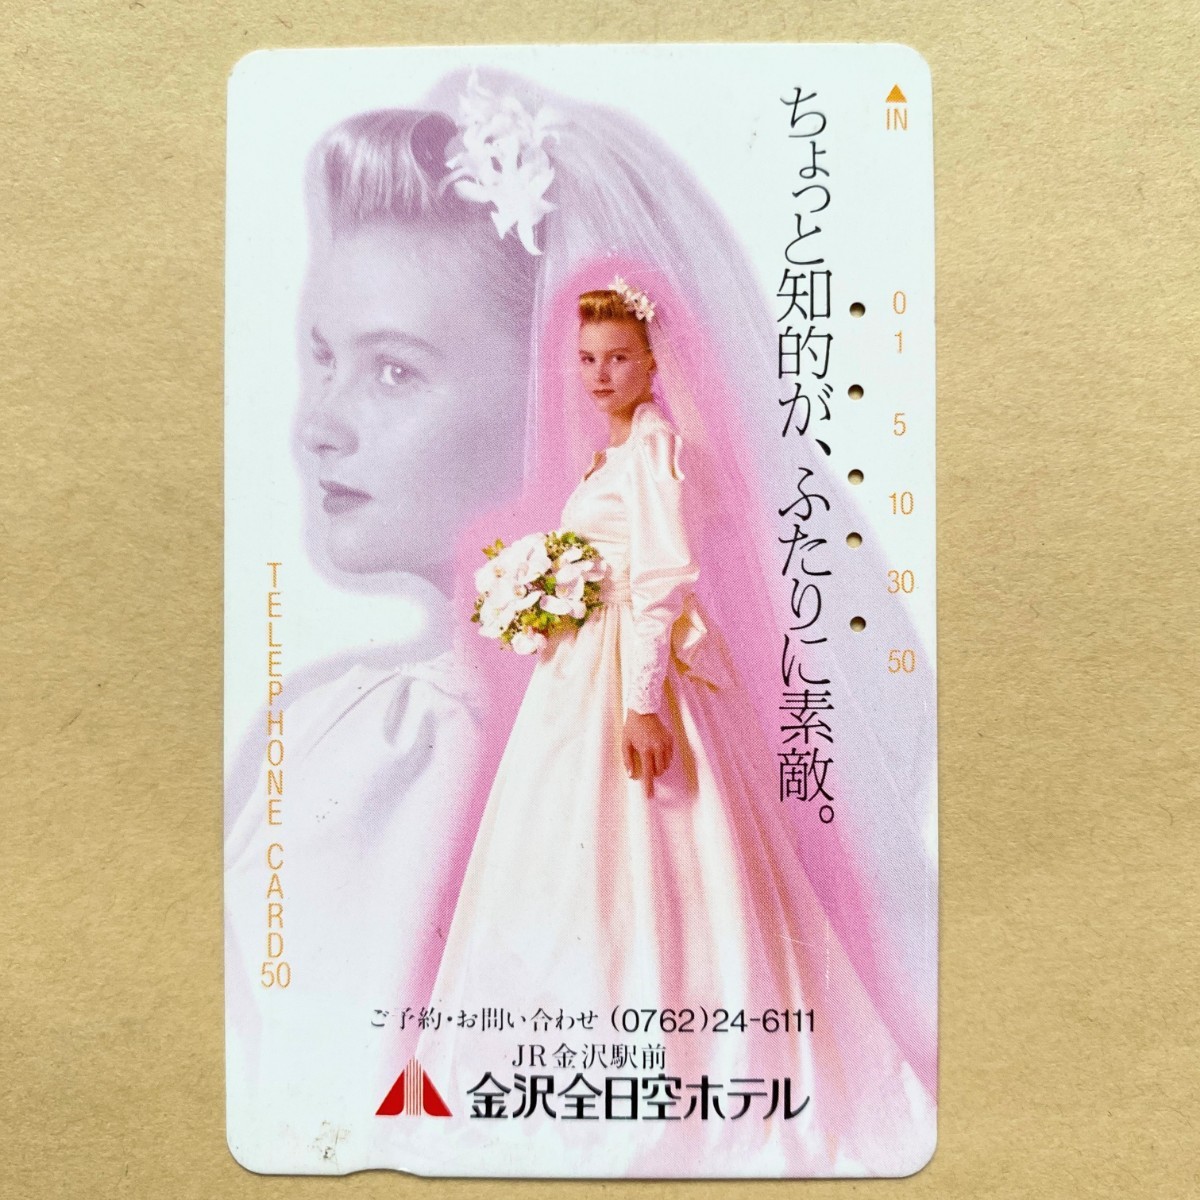 【使用済】 結婚式テレカ 金沢全日空ホテル_画像1